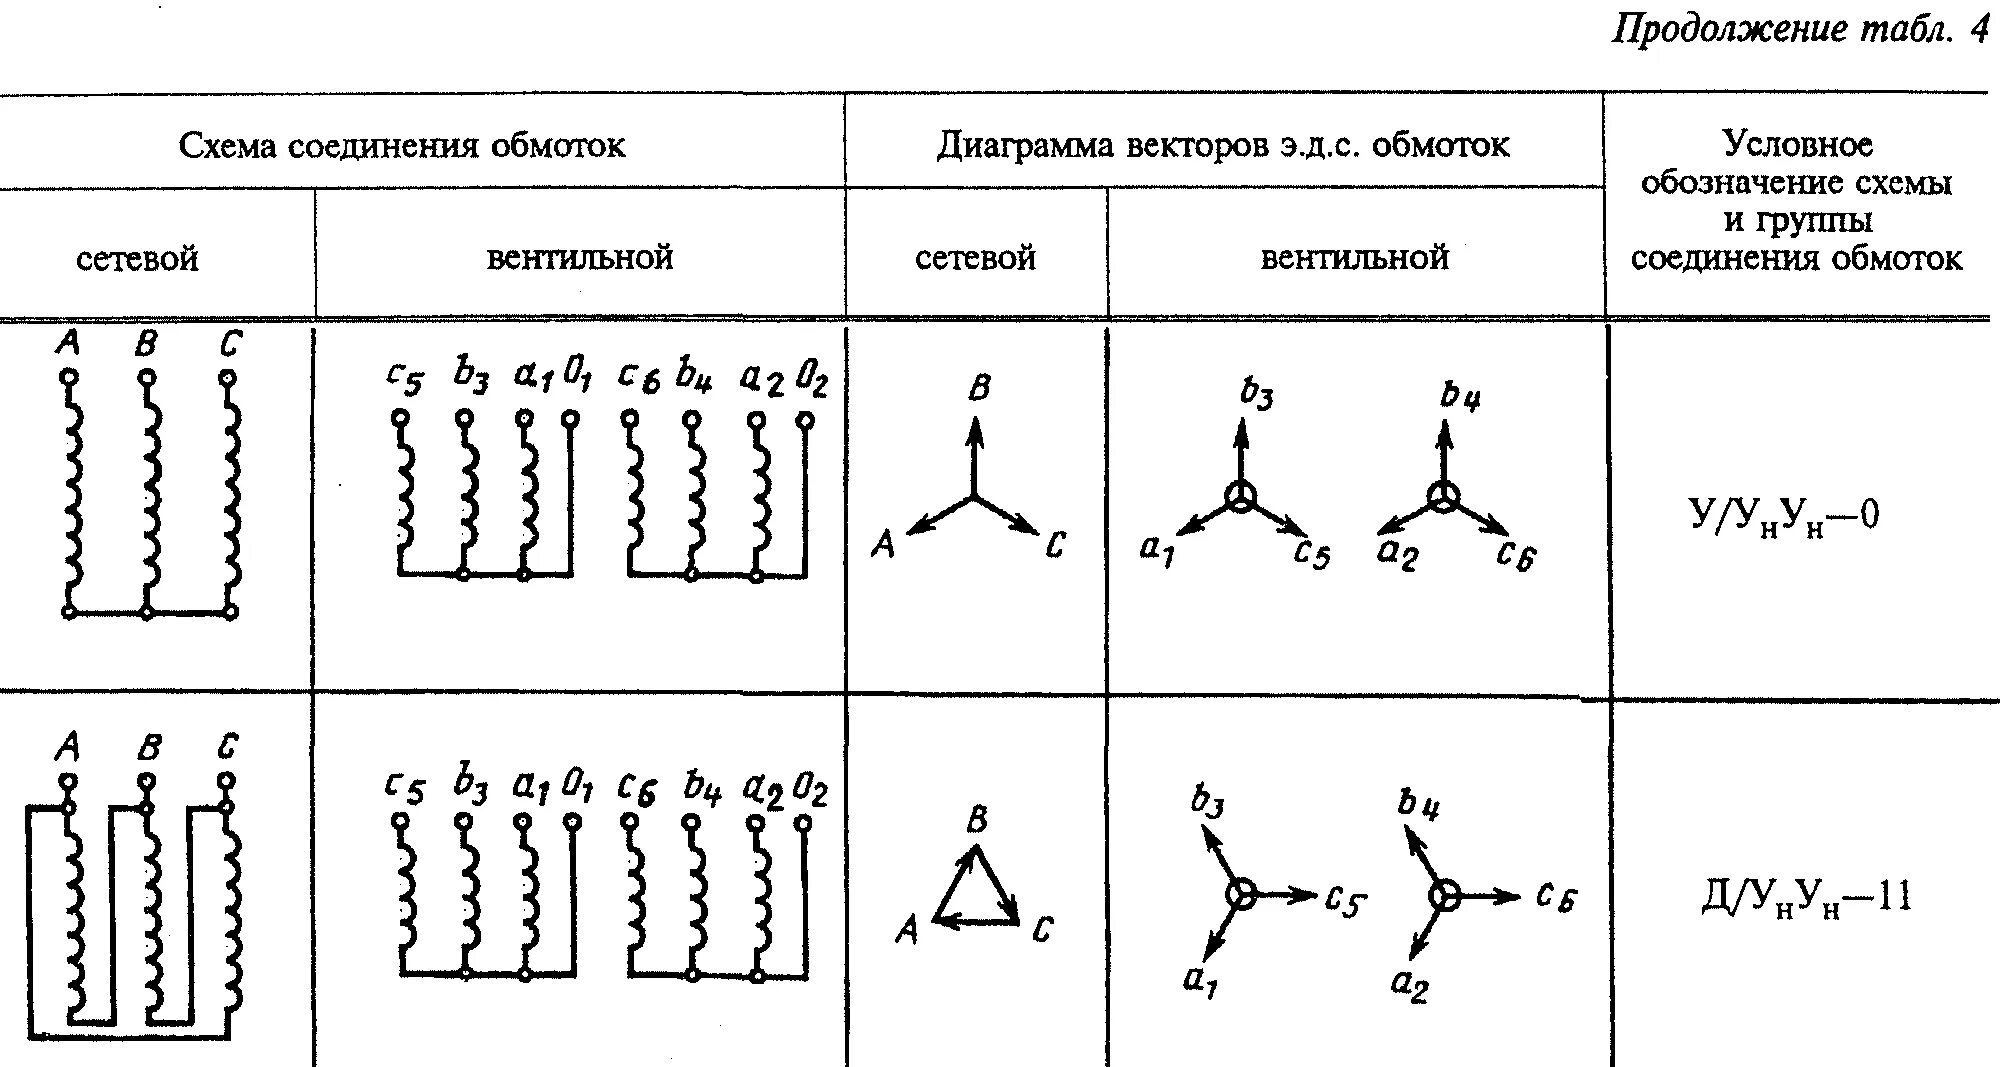 Схема соединения обмоток трансформатора 1/1-0. 1/1-0 Группа соединения. Обозначения схемы соединения обмоток. Схема соединения обмоток трансформатора у/Zн-11. Группы соединений воды